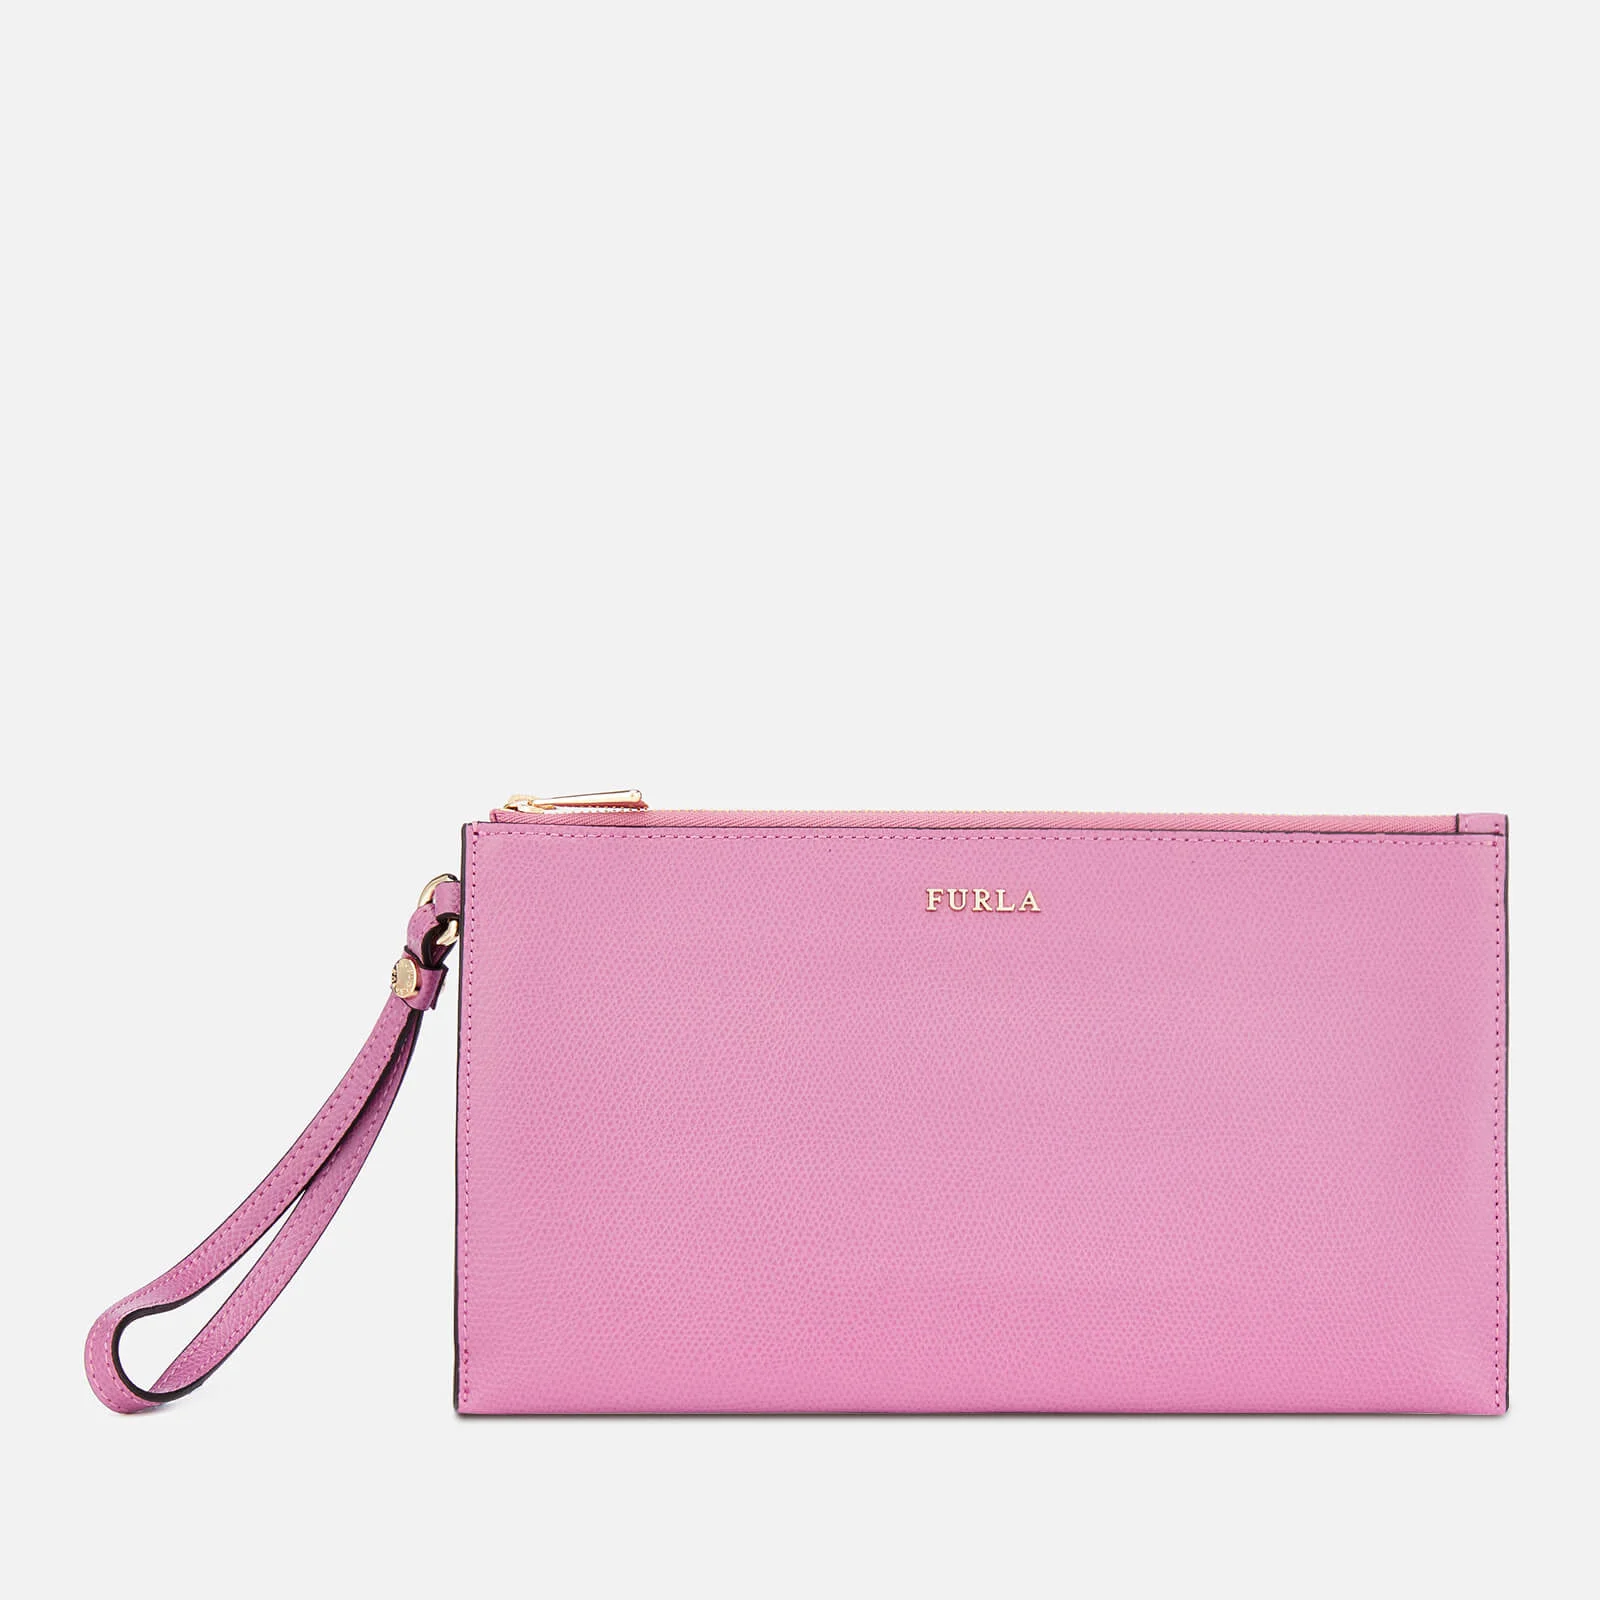 Furla Women's Babylon XL Envelope Bag - Pink Image 1